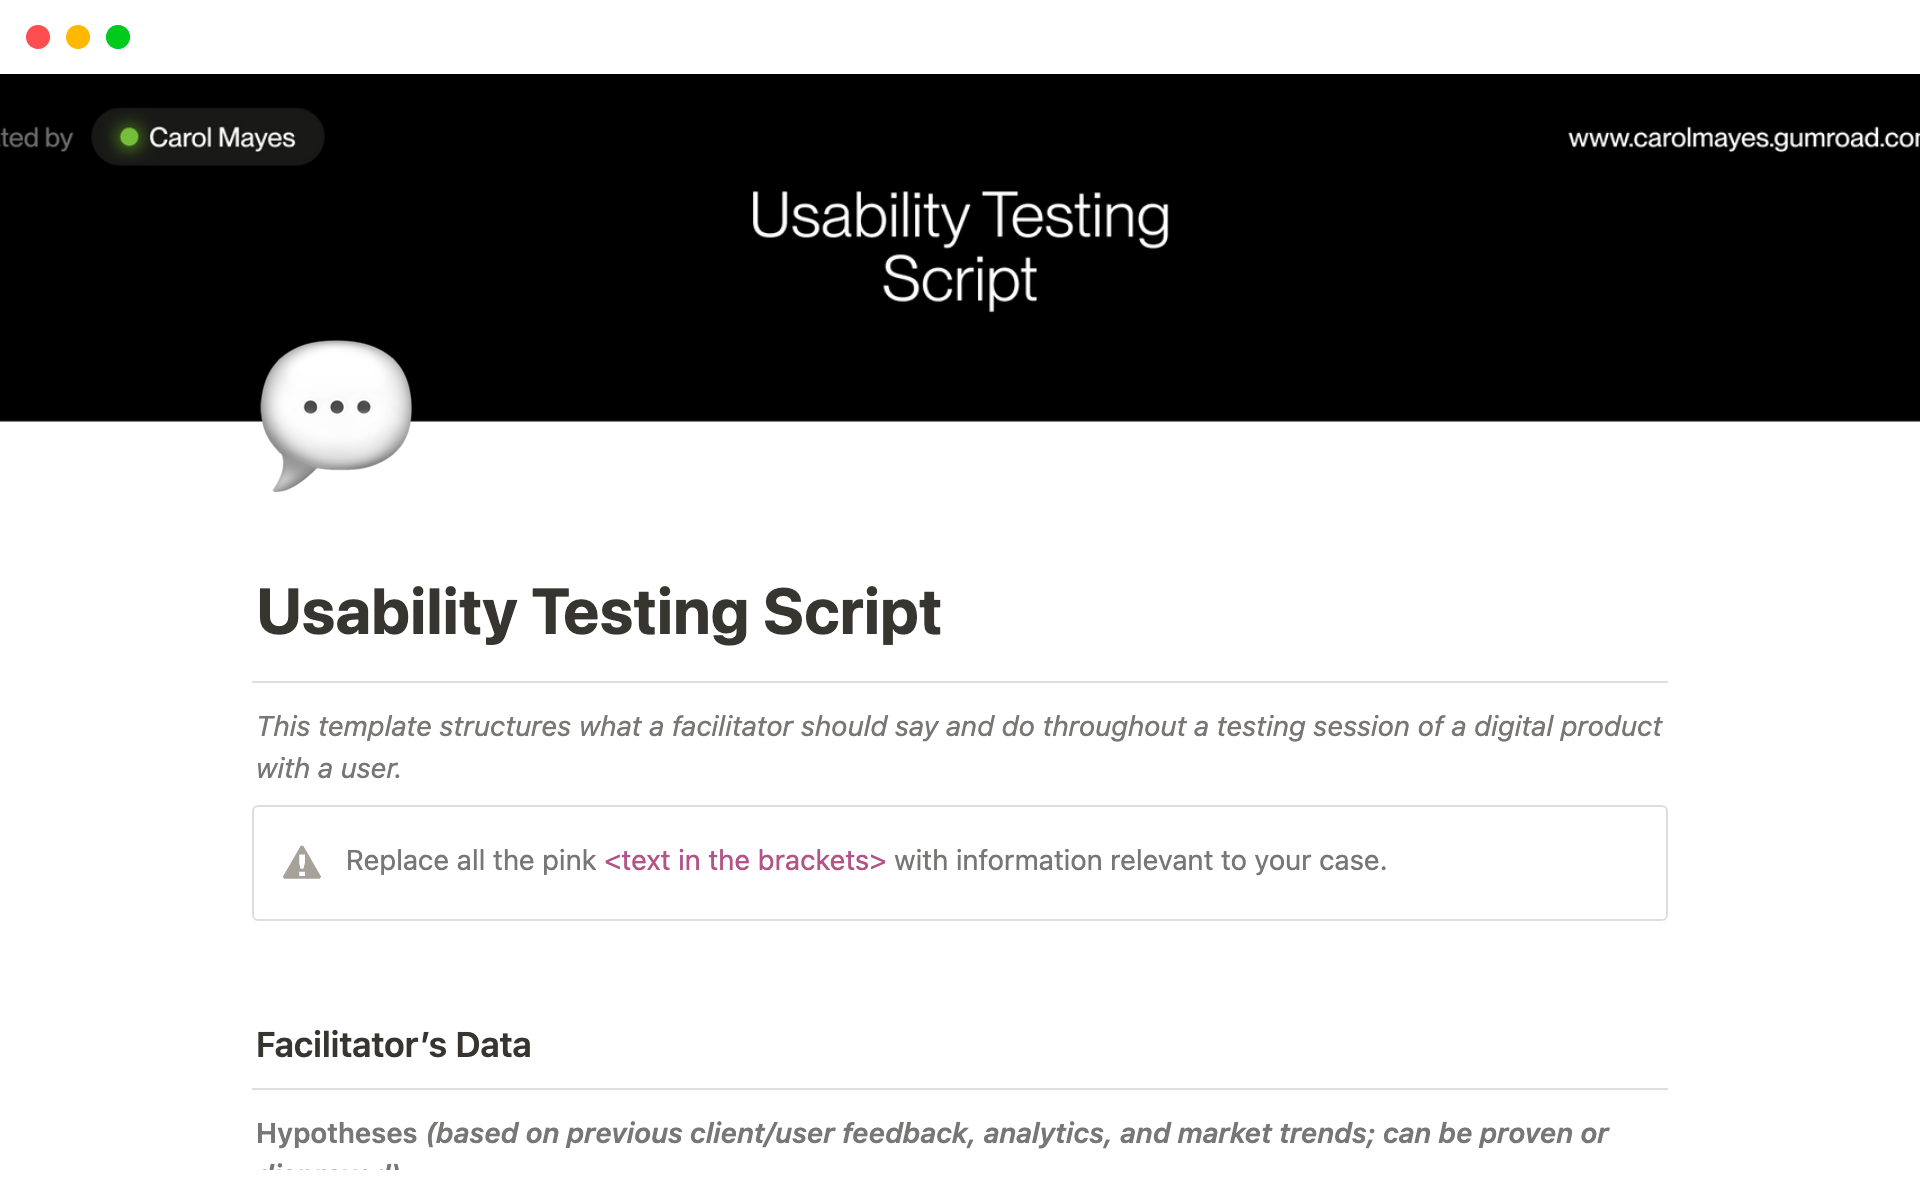 Uma prévia do modelo para Usability Testing Script